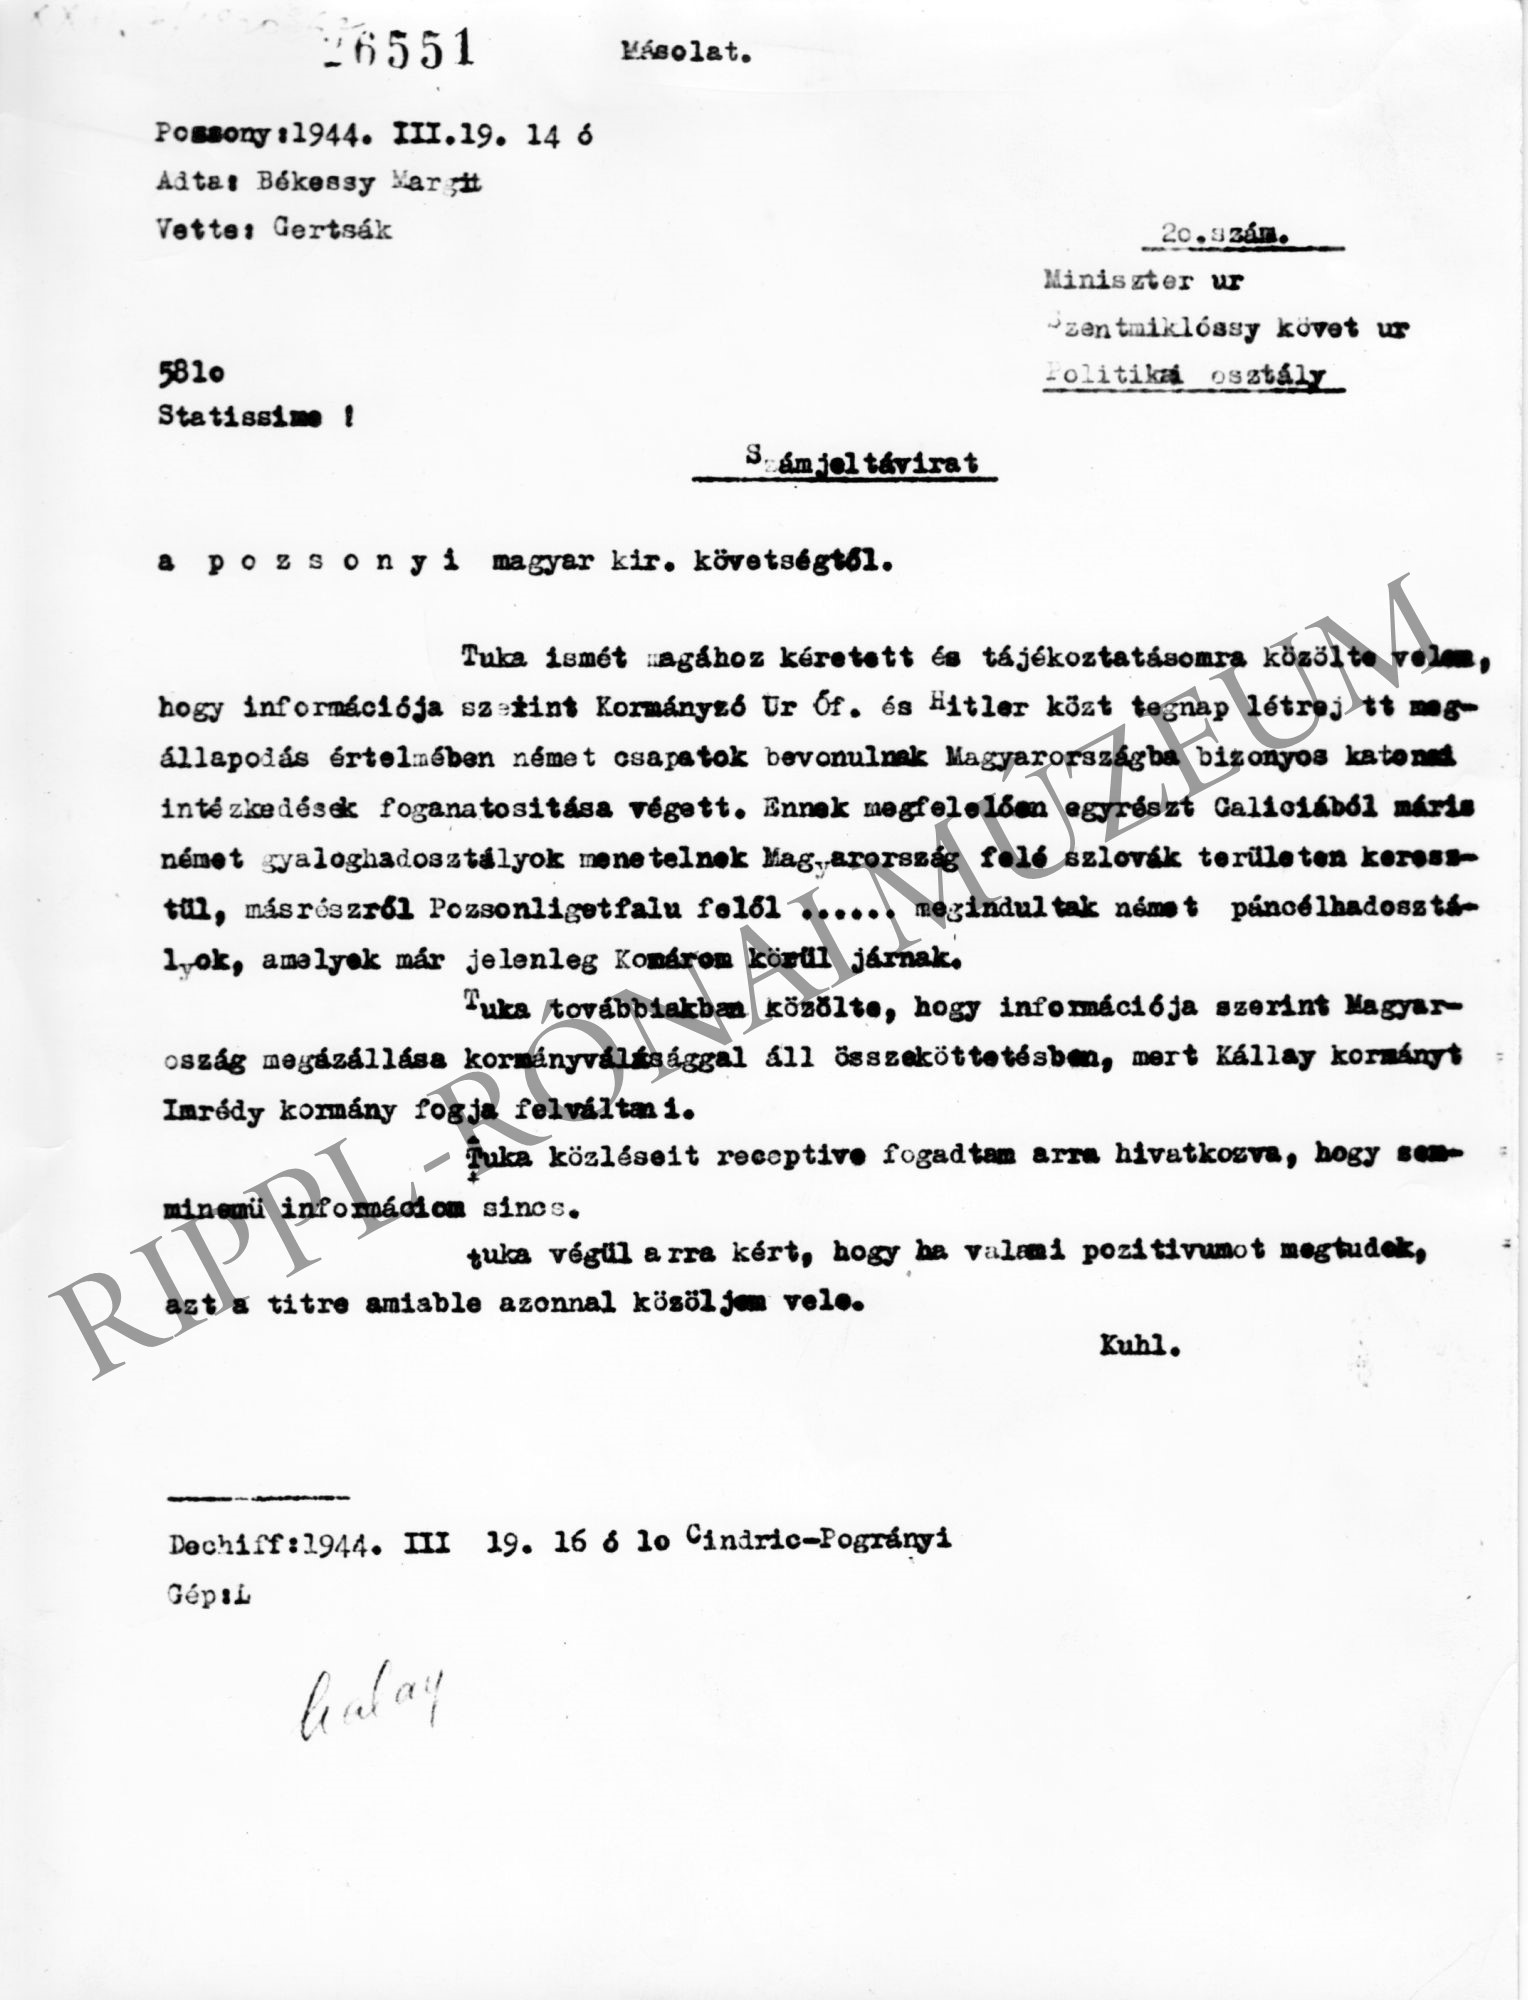 A pozsonyi magyar követség távirata a német megszállásról. 1944. március 19. (Rippl-Rónai Múzeum CC BY-NC-SA)